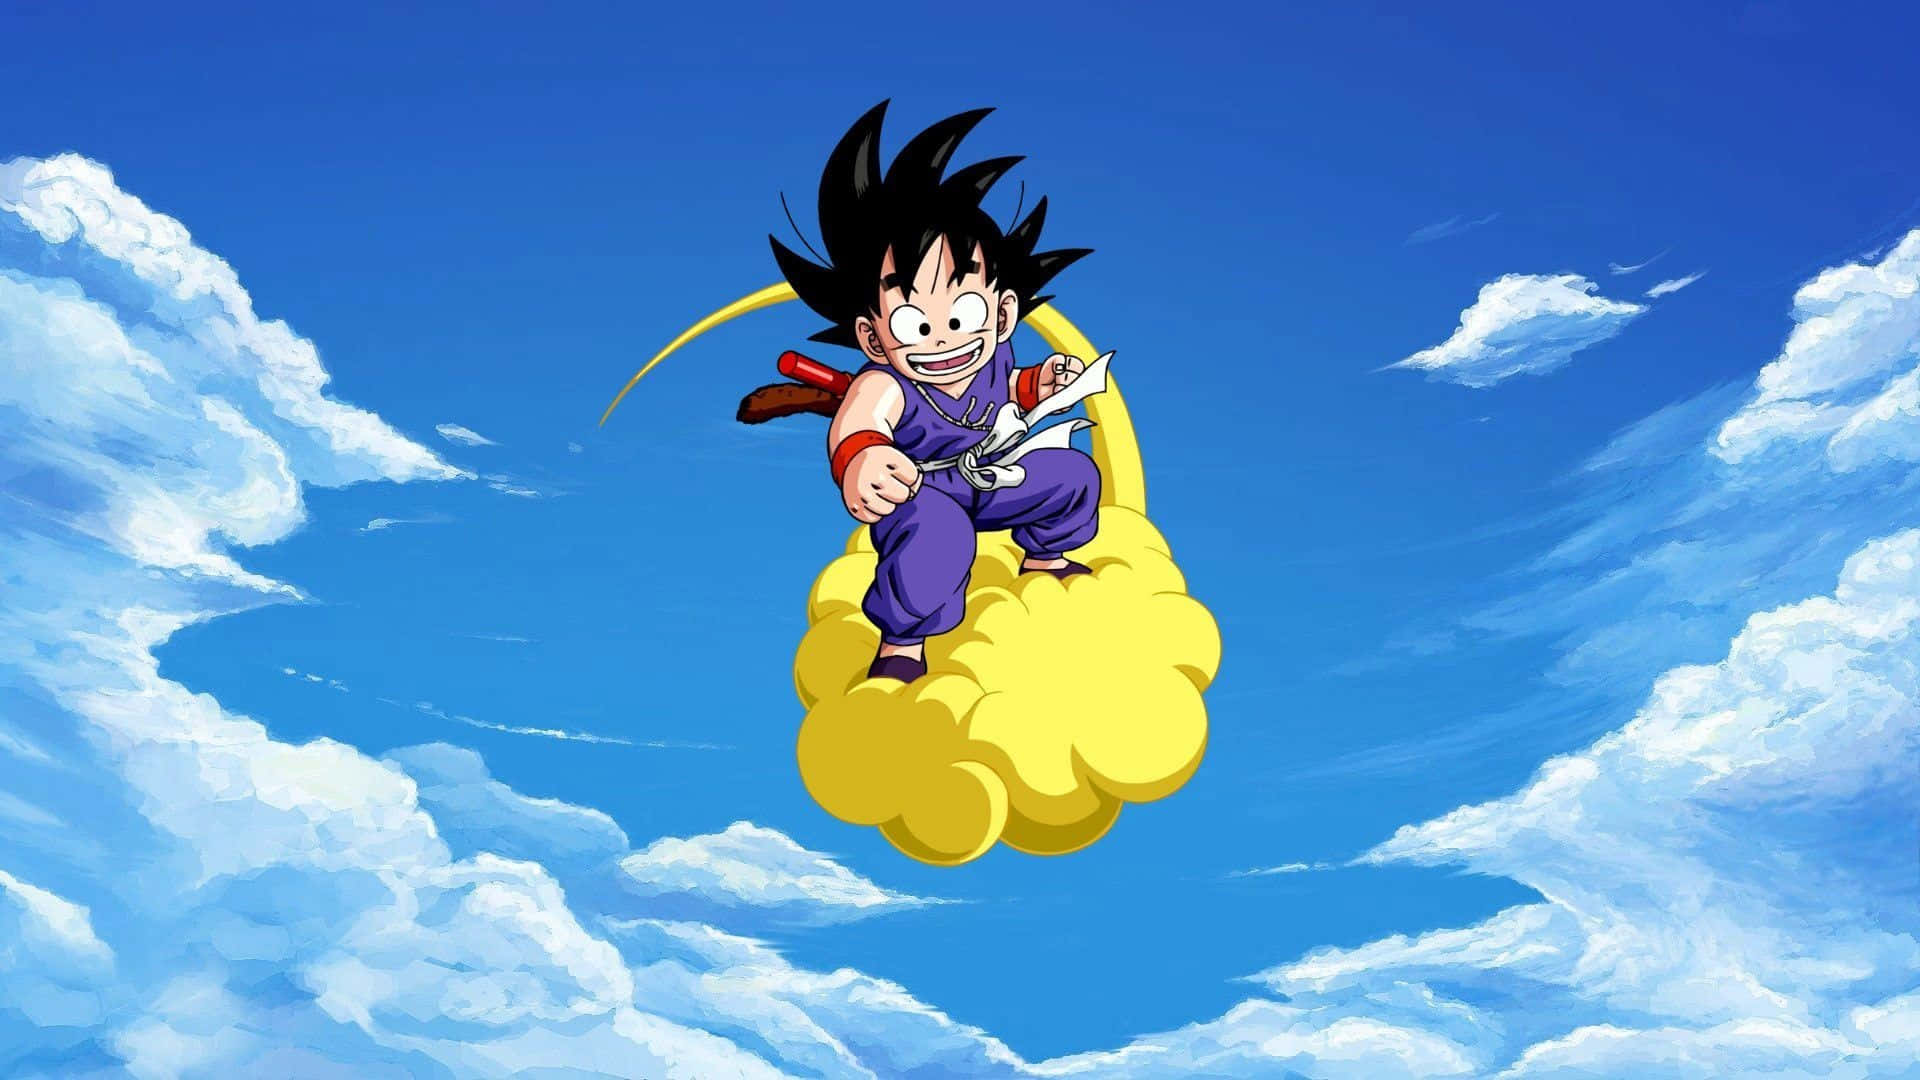 Einjunger Goku, Der Seine Reise Zur Meisterschaft In Der Kampfkunst Beginnt. Wallpaper